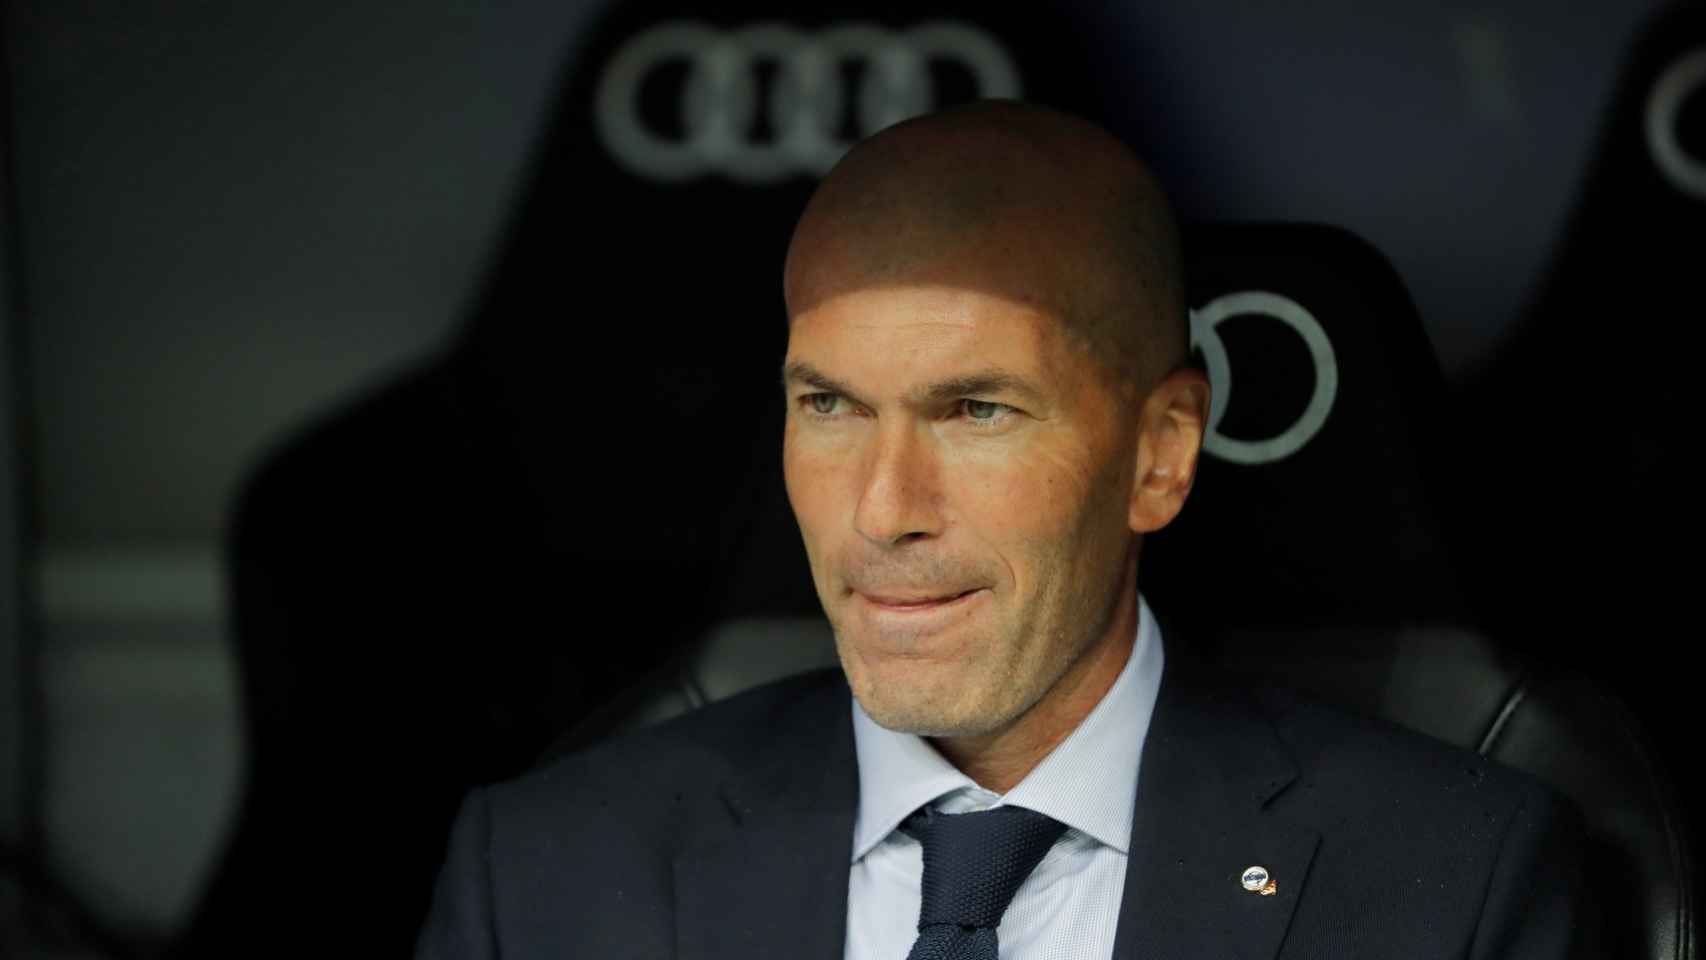 Zinedine Zidane en el banquillo del Real Madrid